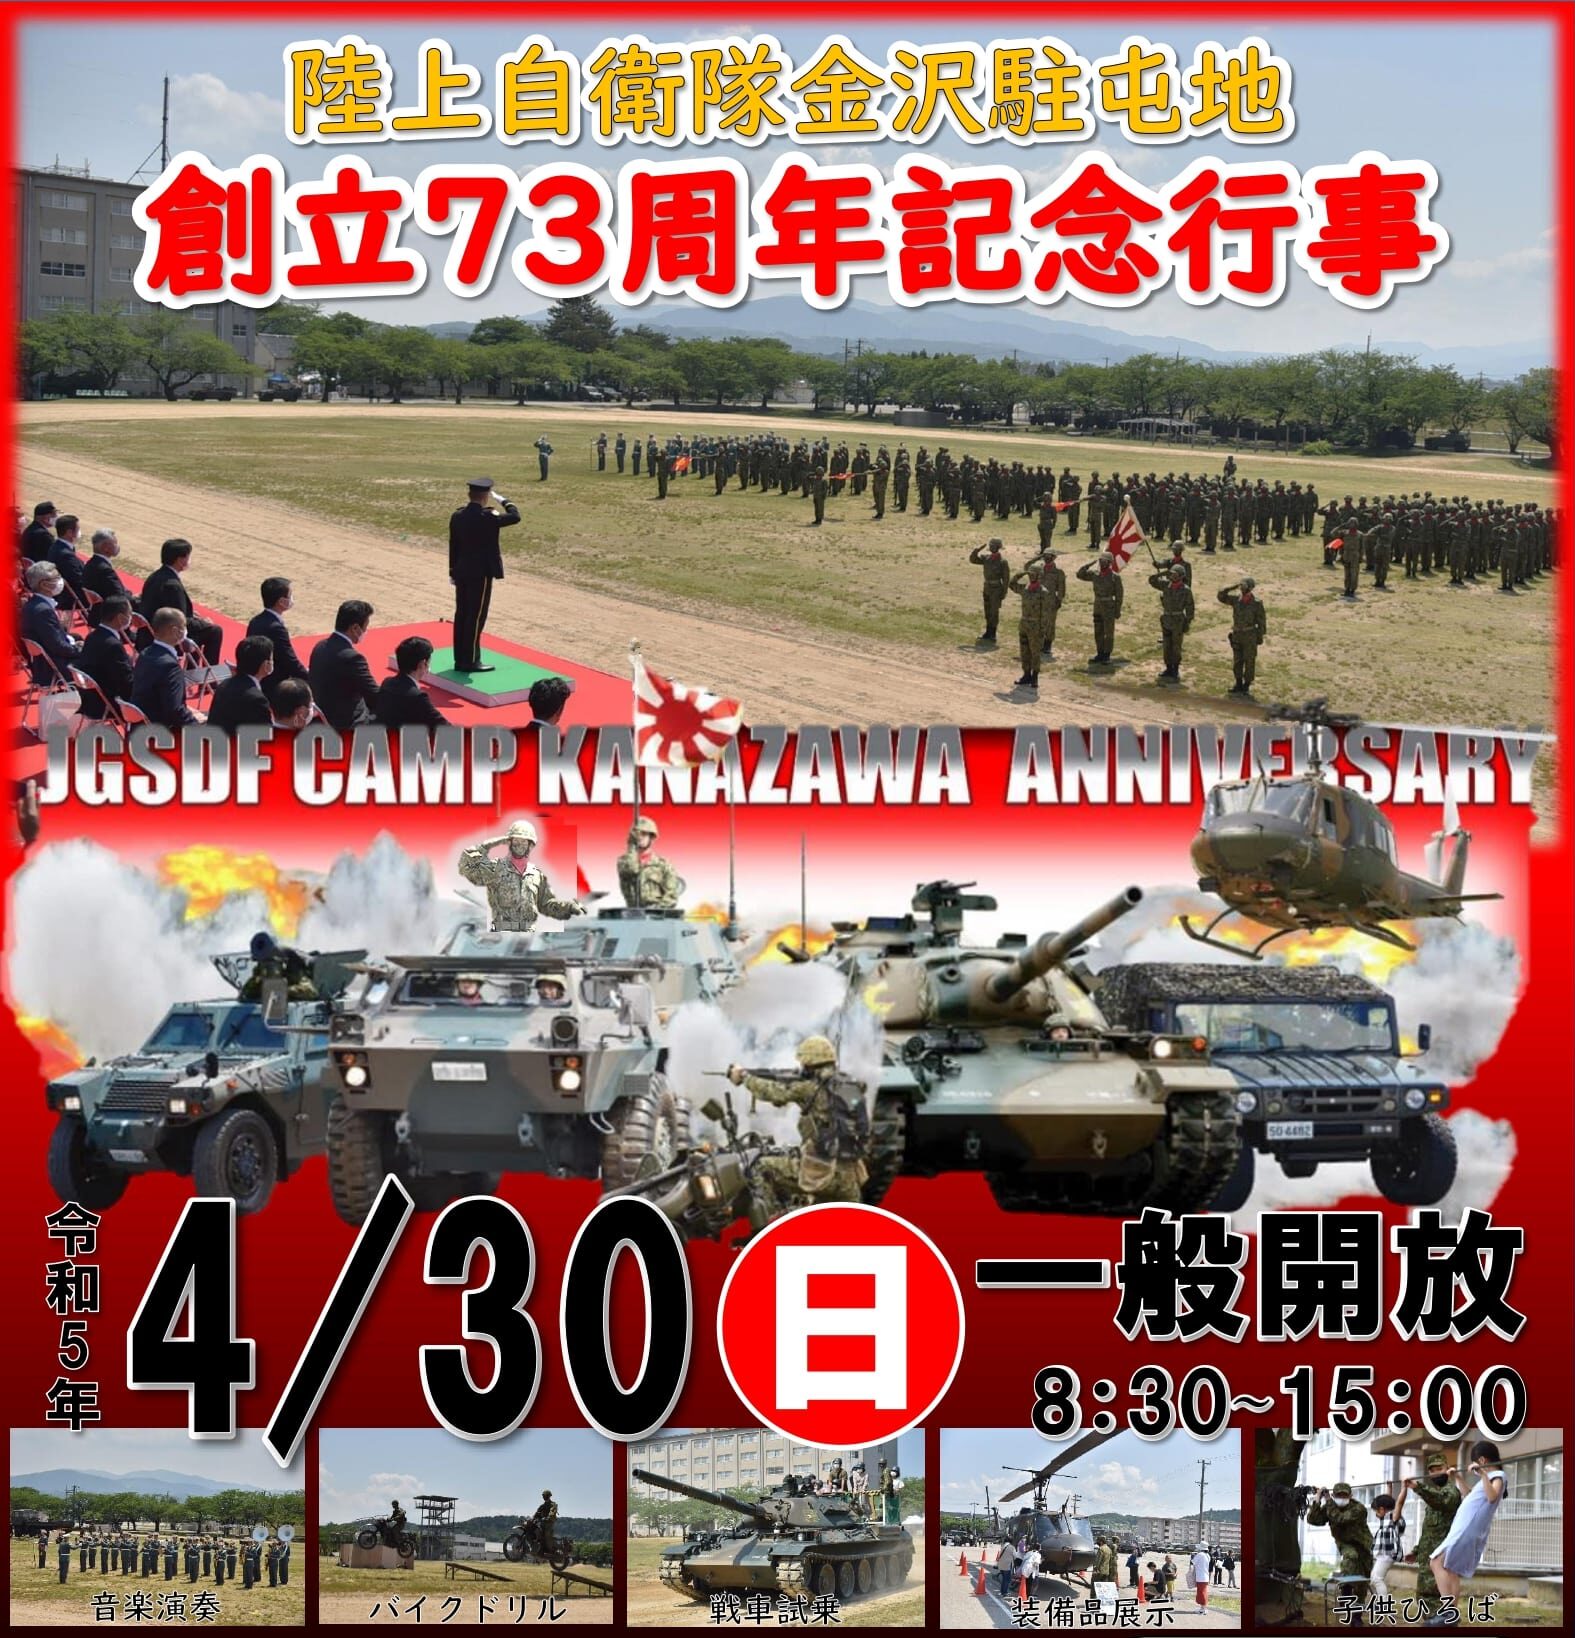 陸上自衛隊 金沢駐屯地創立73周年記念行事 一般開放